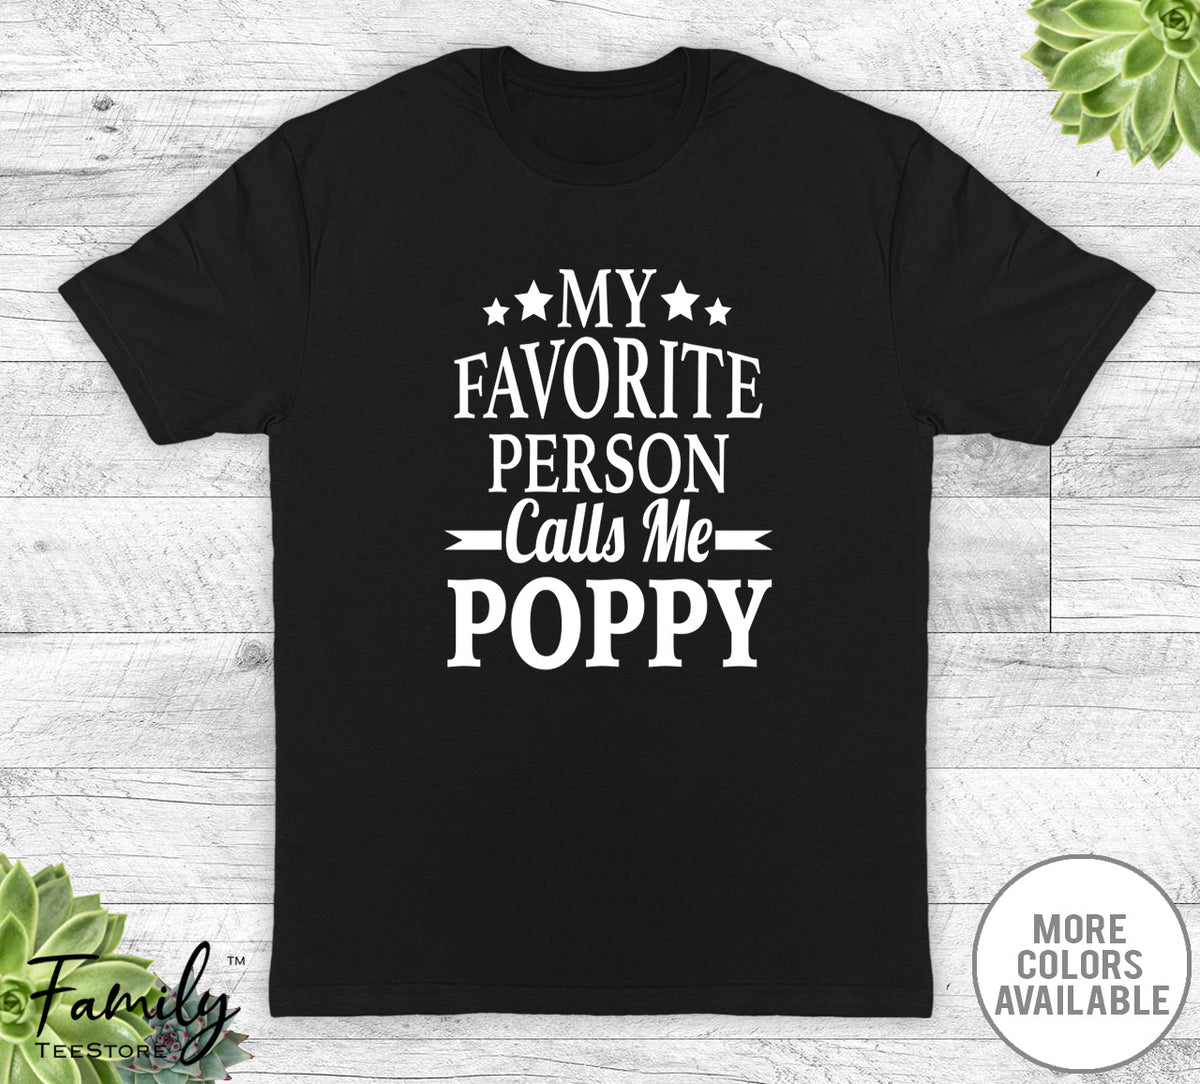 My Favorite Person Calls Me Poppy - Unisex T-shirt - Poppy Shirt - New Poppy Gift